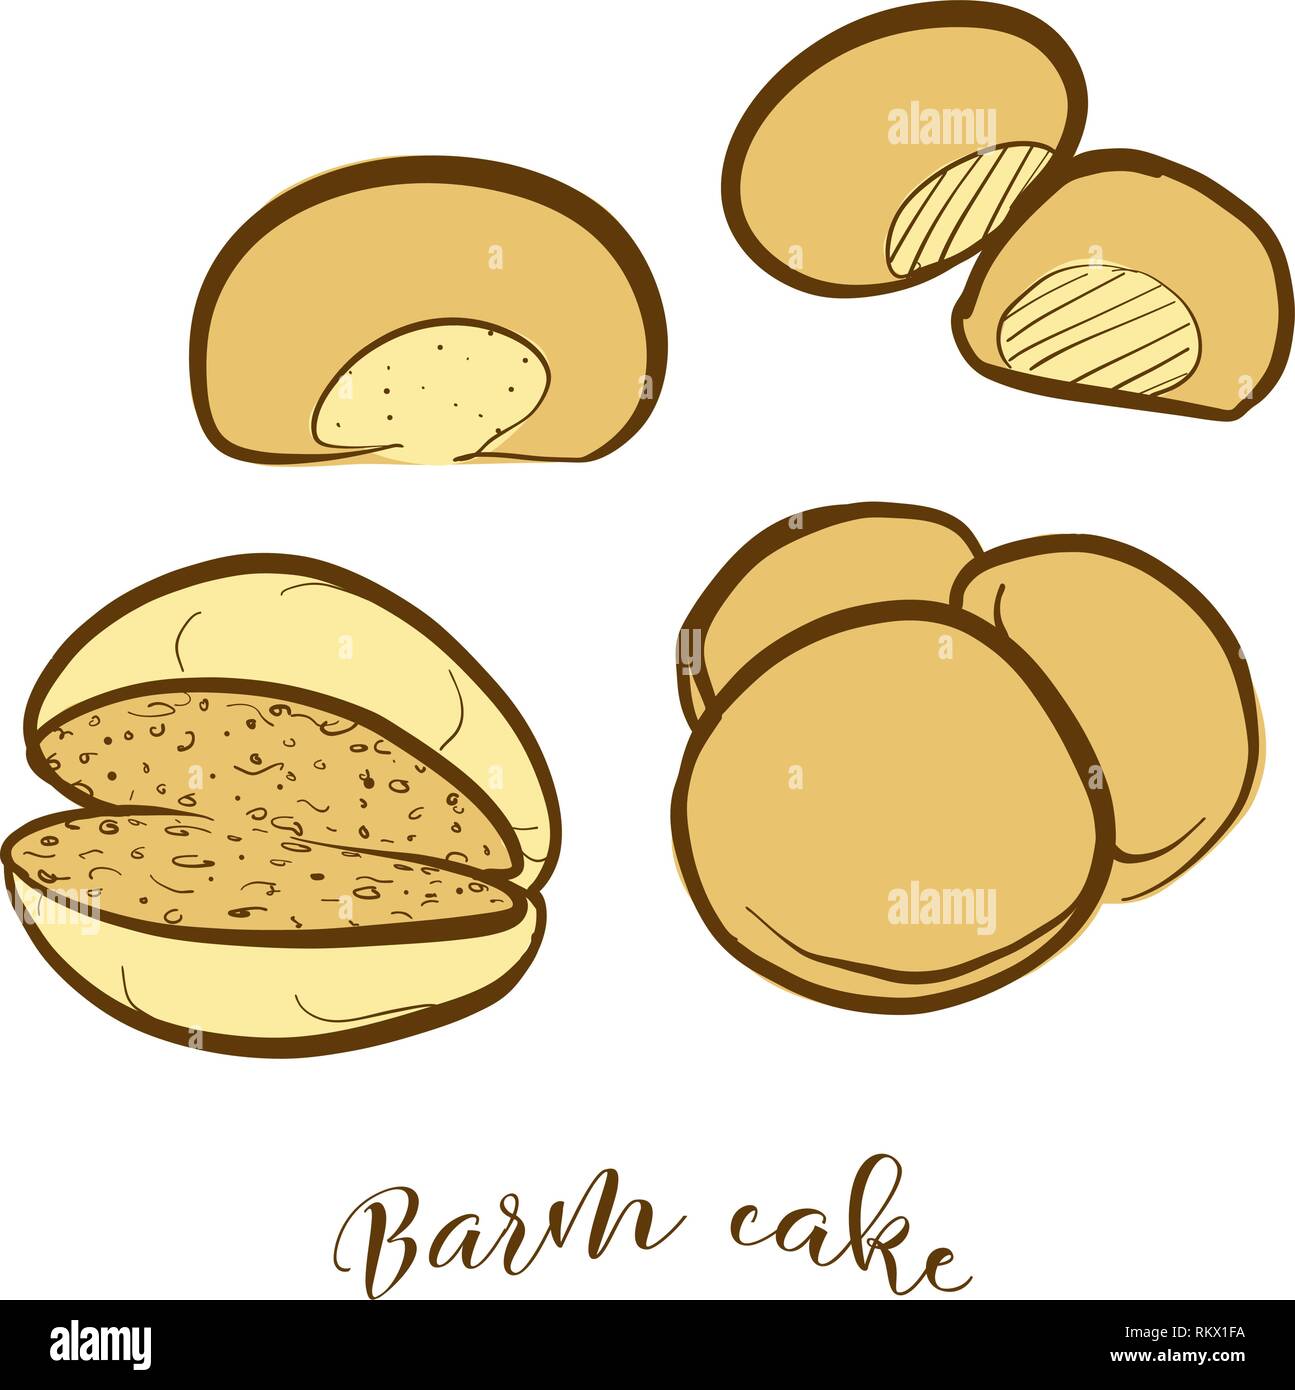 Farbige Skizzen der Barm Kuchen Brot. Vektor Zeichnung von Hefe Brot essen, in der Regel in Lancashire bekannt. Farbige Brot Abbildung Serie. Stock Vektor